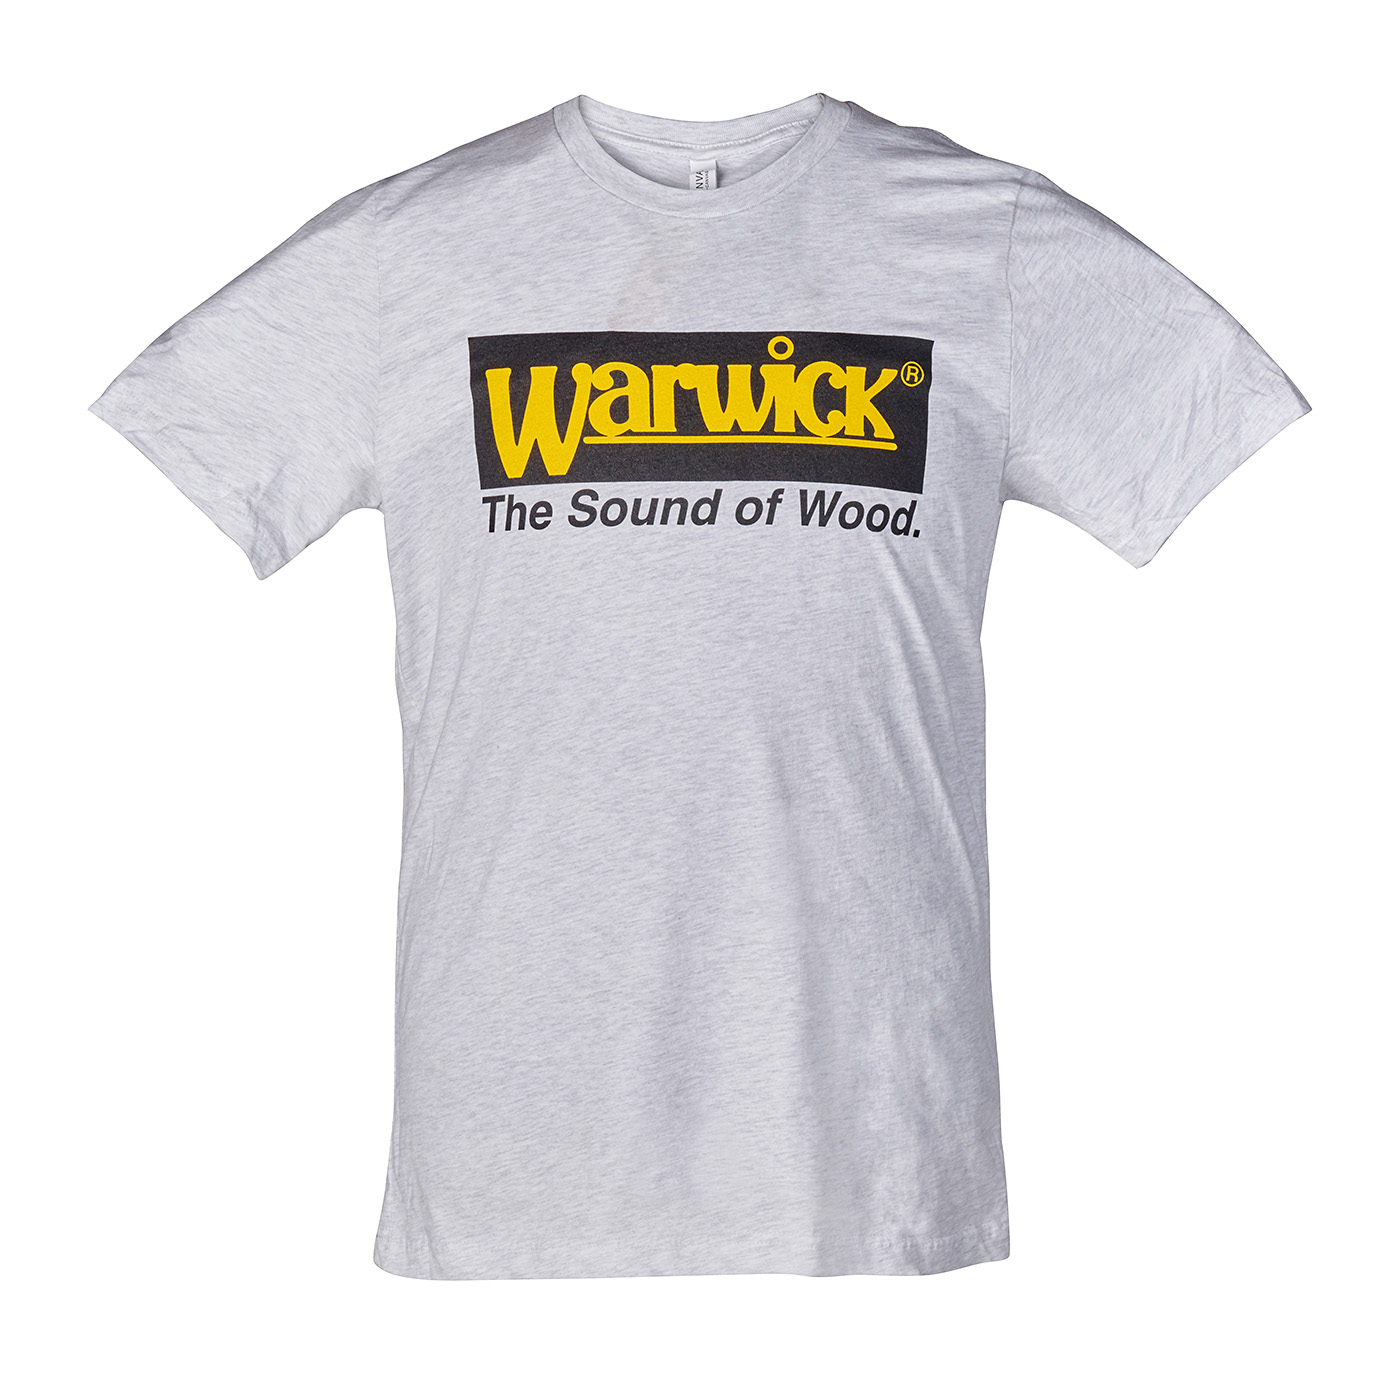 Warwick Promo - Vintage Logo T-Shirt, Gray - Size L